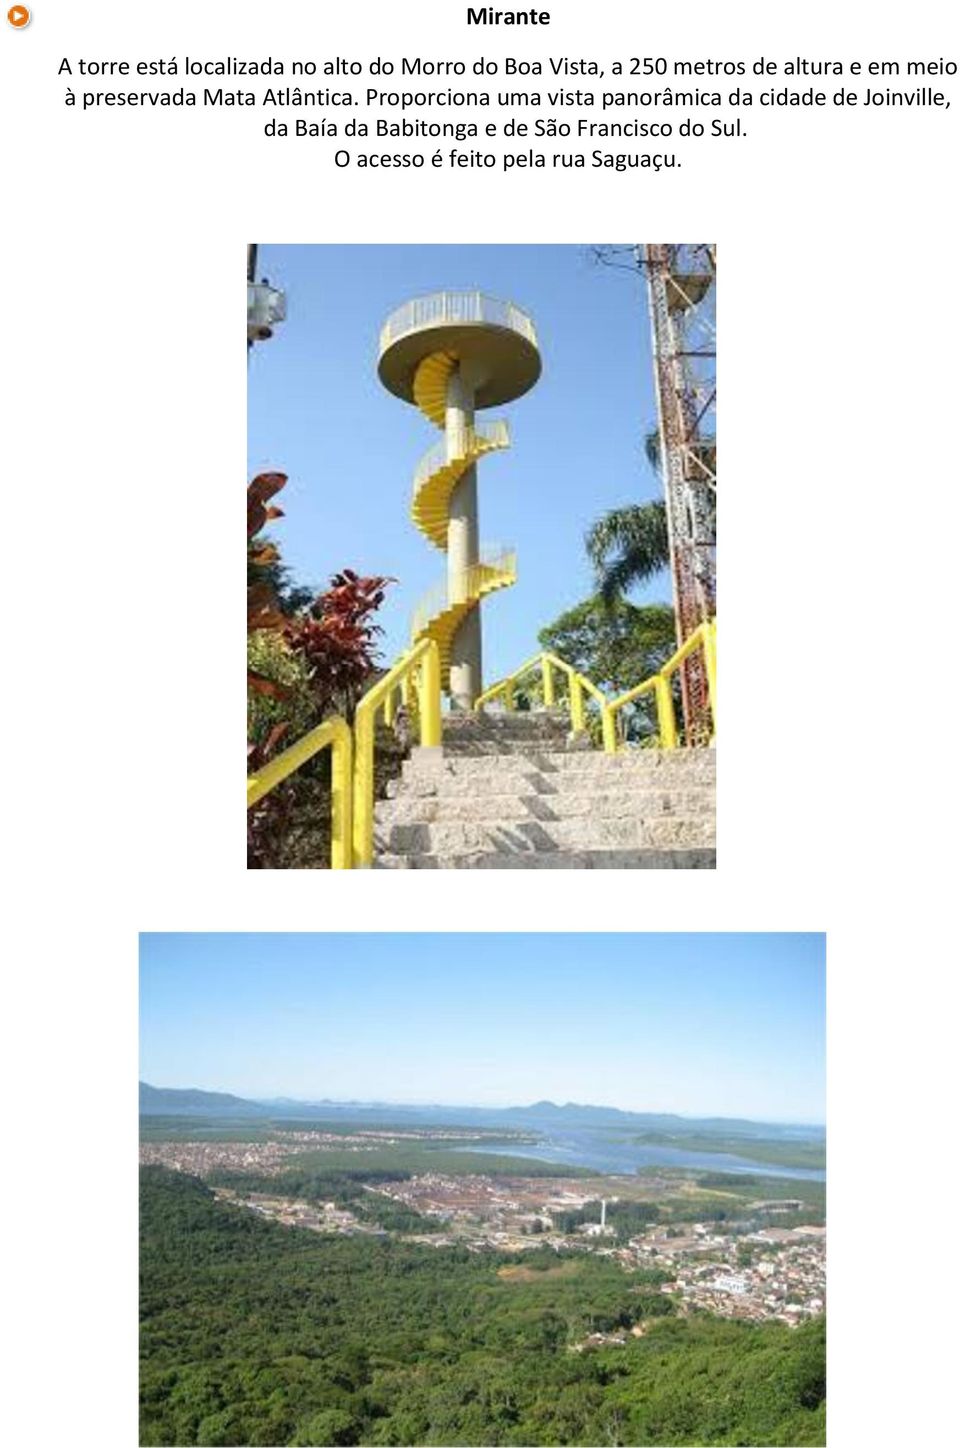 Proporciona uma vista panorâmica da cidade de Joinville, da Baía